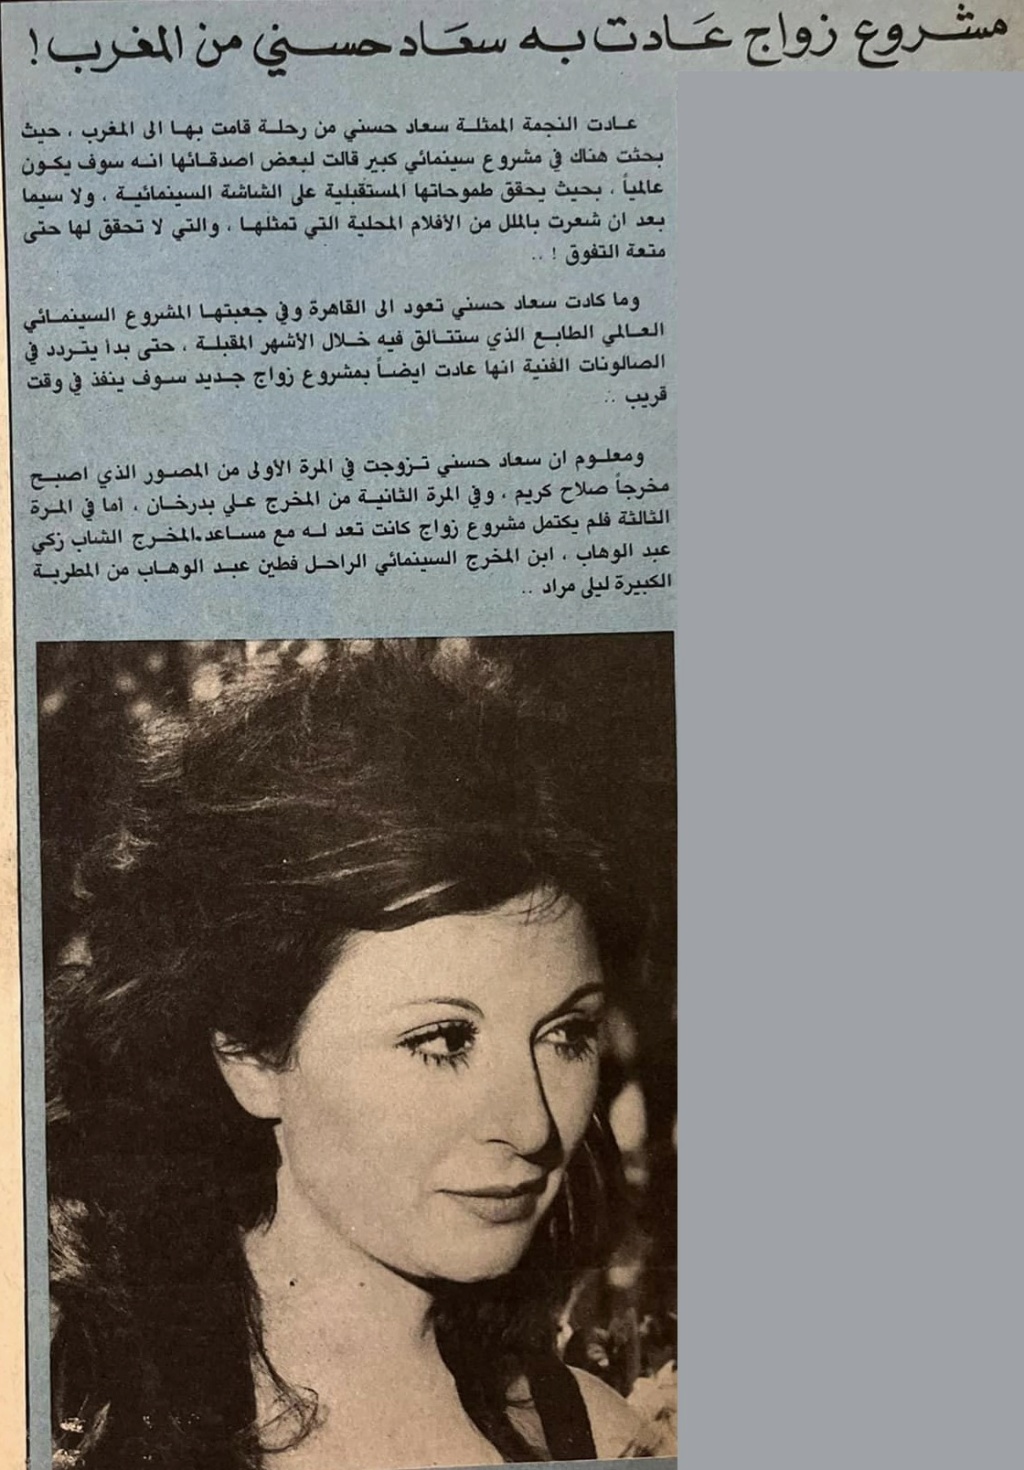 خبر صحفي : مشروع زواج عادت به سعاد حسني من المغرب ! 1983 م Ai_iy_10